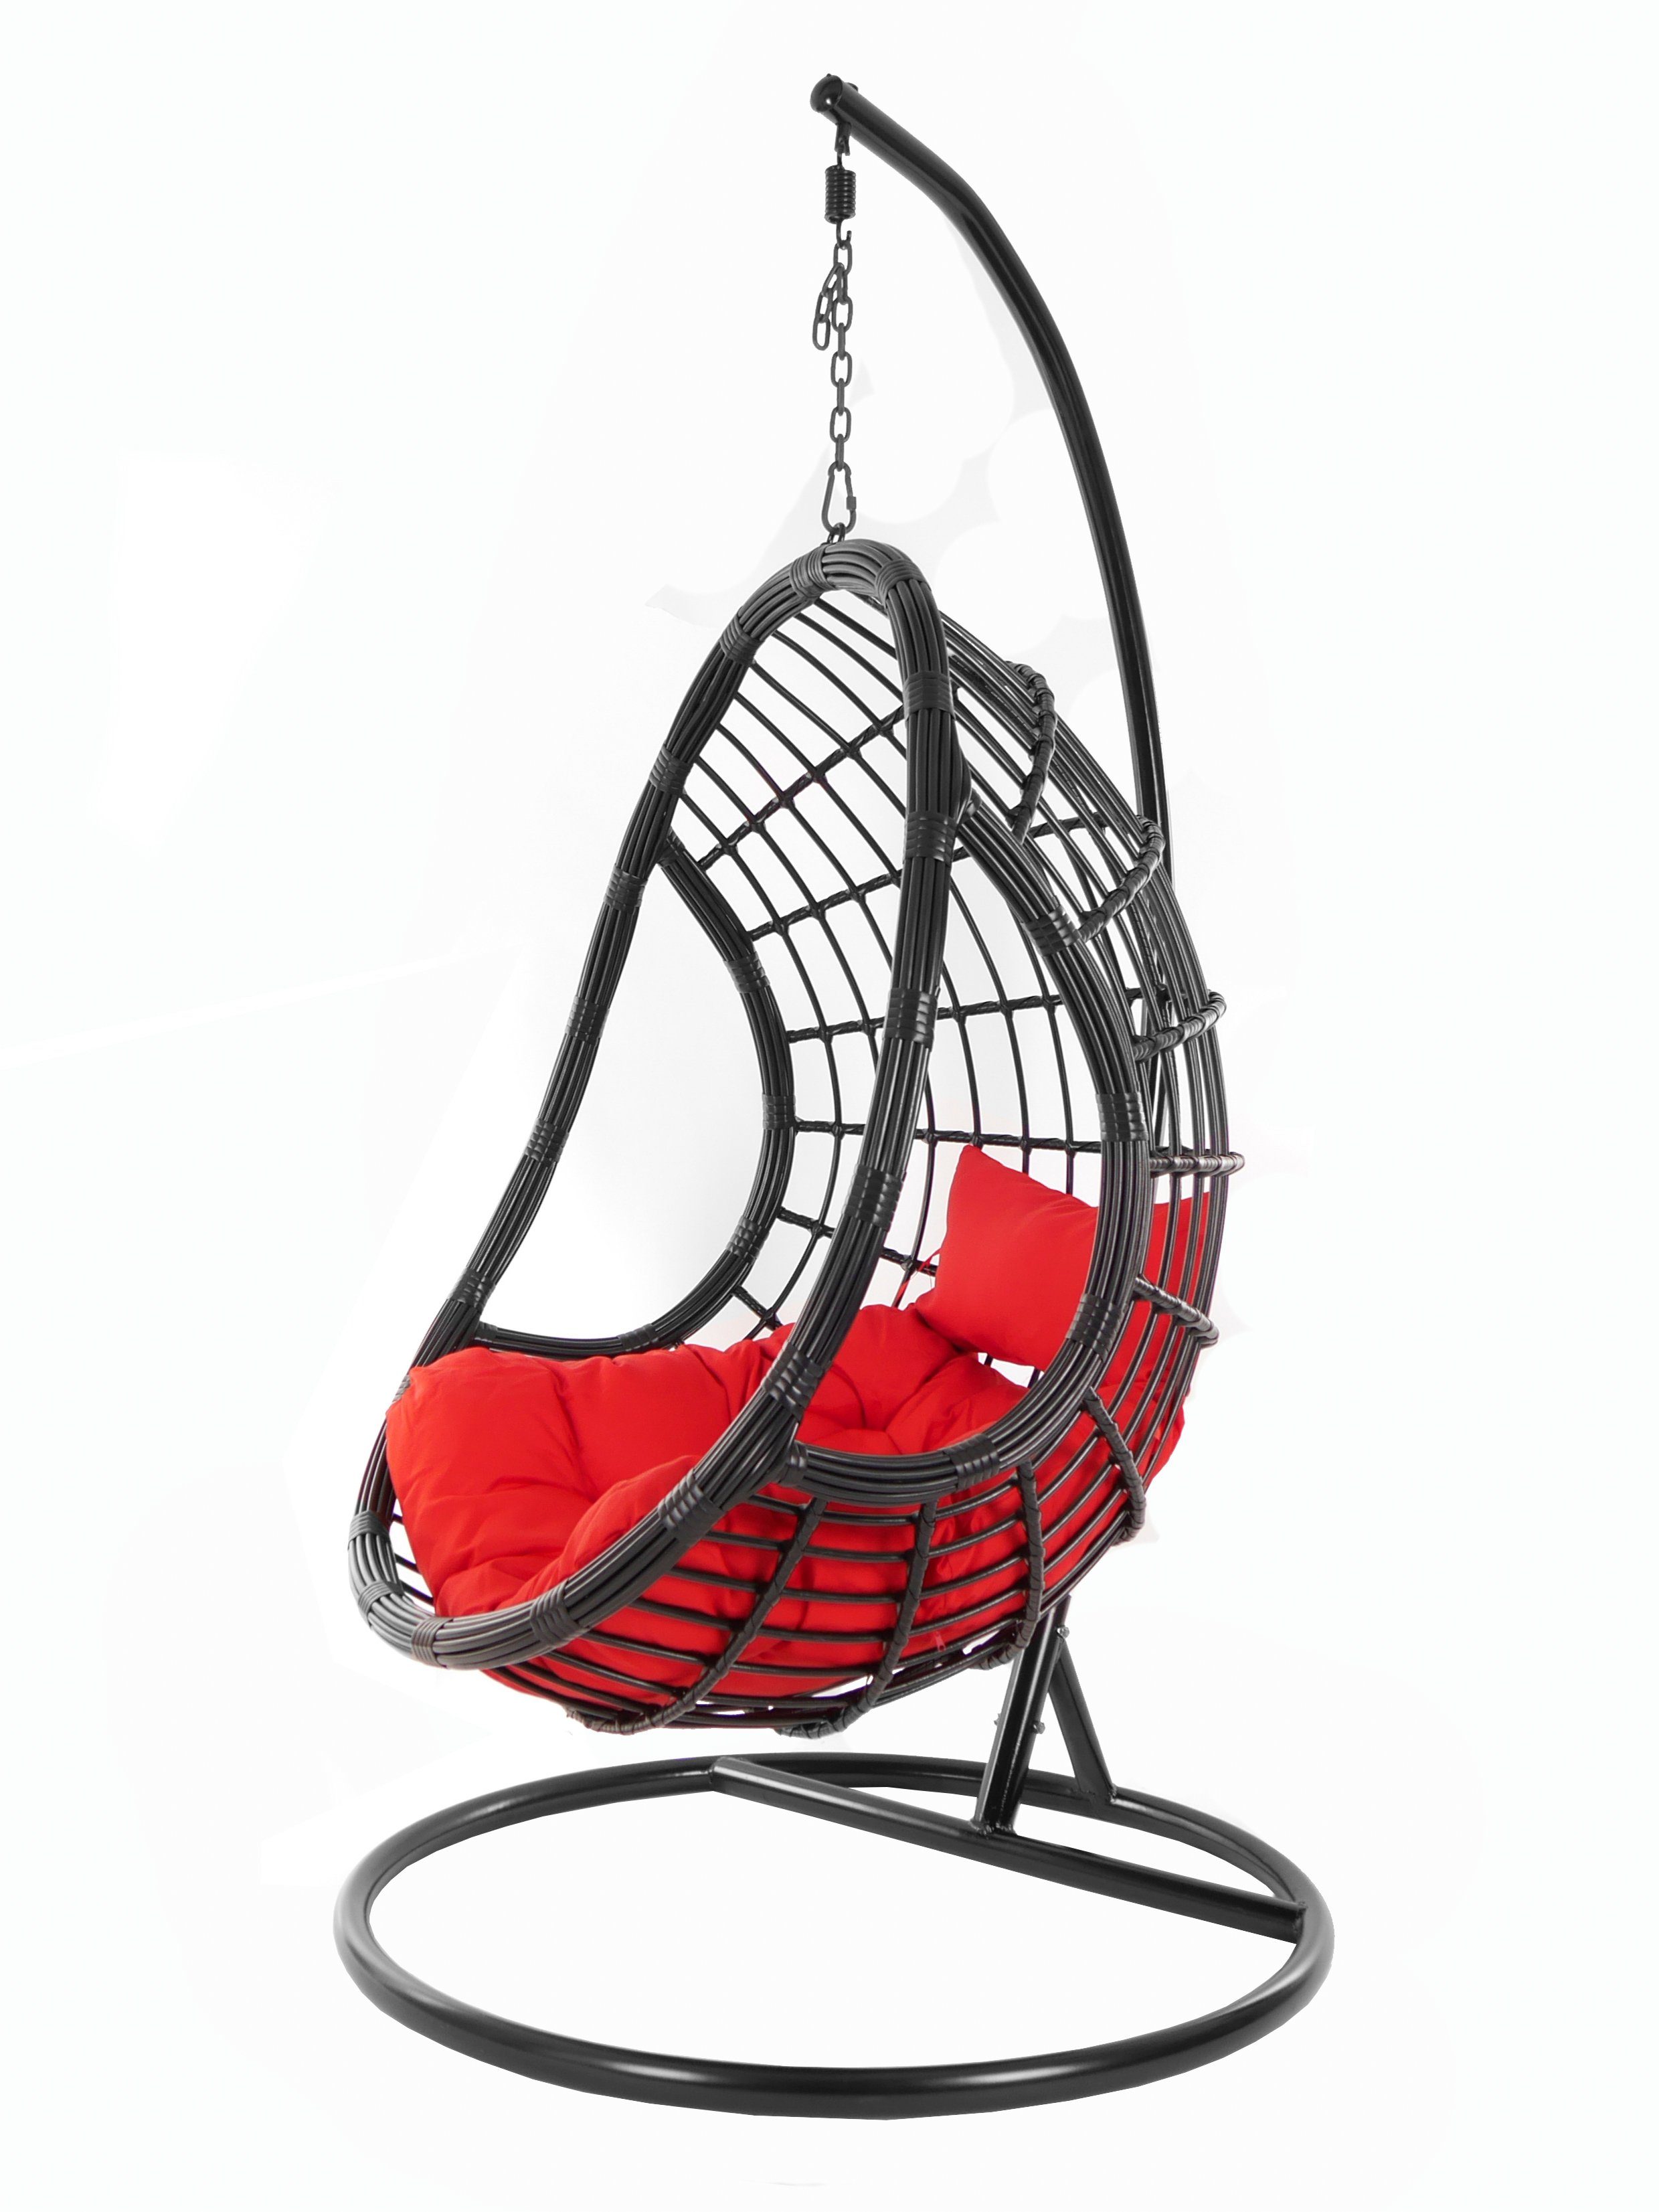 KIDEO Hängesessel Gestell edles scarlet) Swing rot Hängesessel PALMANOVA (3050 Schwebesessel, und mit Kissen, Loungemöbel, Chair, black, schwarz, Design